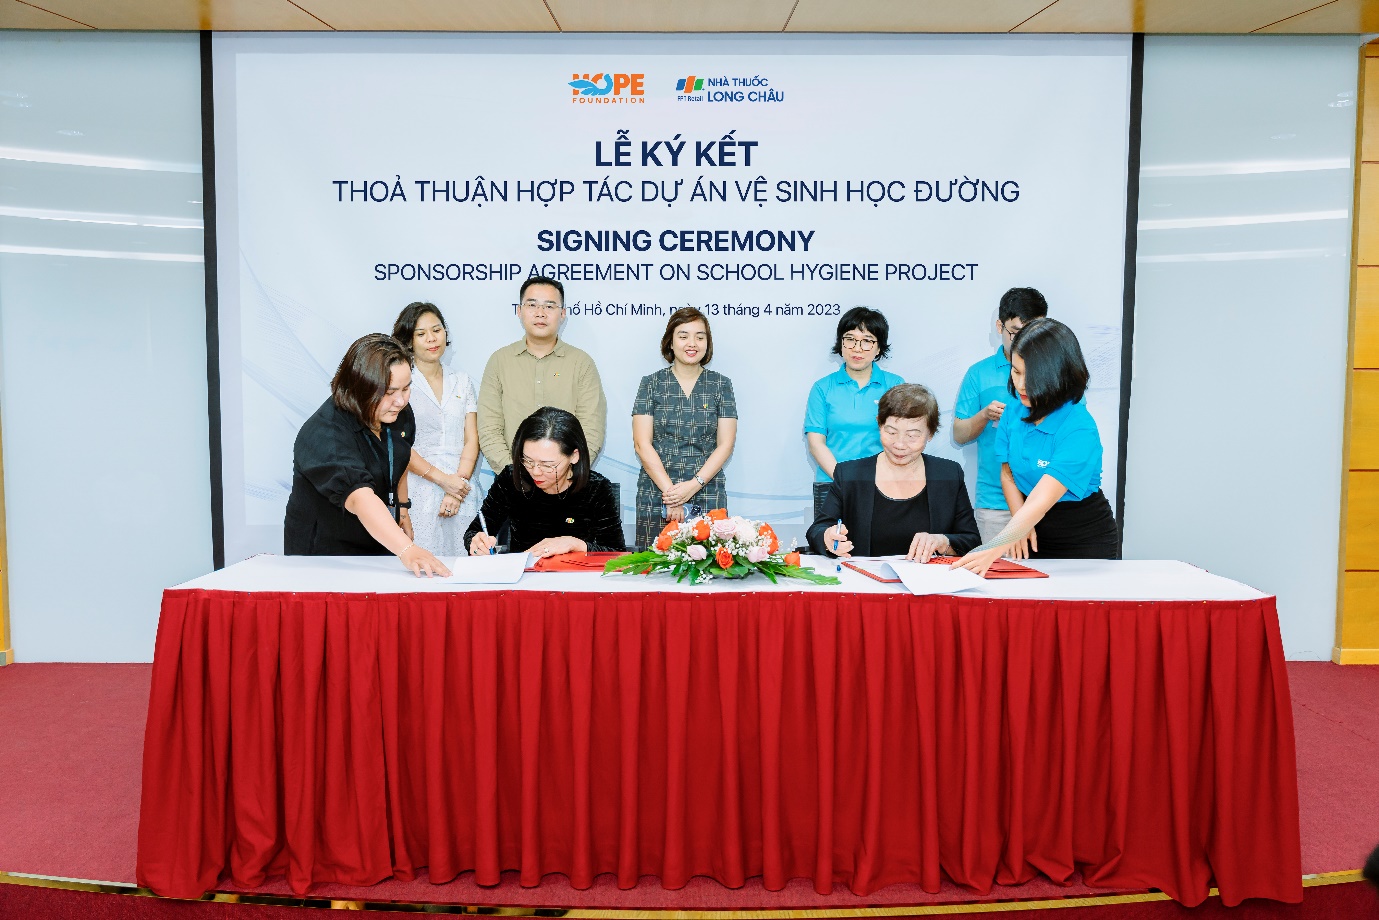 FPT Long Châu đồng hành cùng Quỹ Hy vọng triển khai dự án “Vệ sinh học đường” - Ảnh 1.